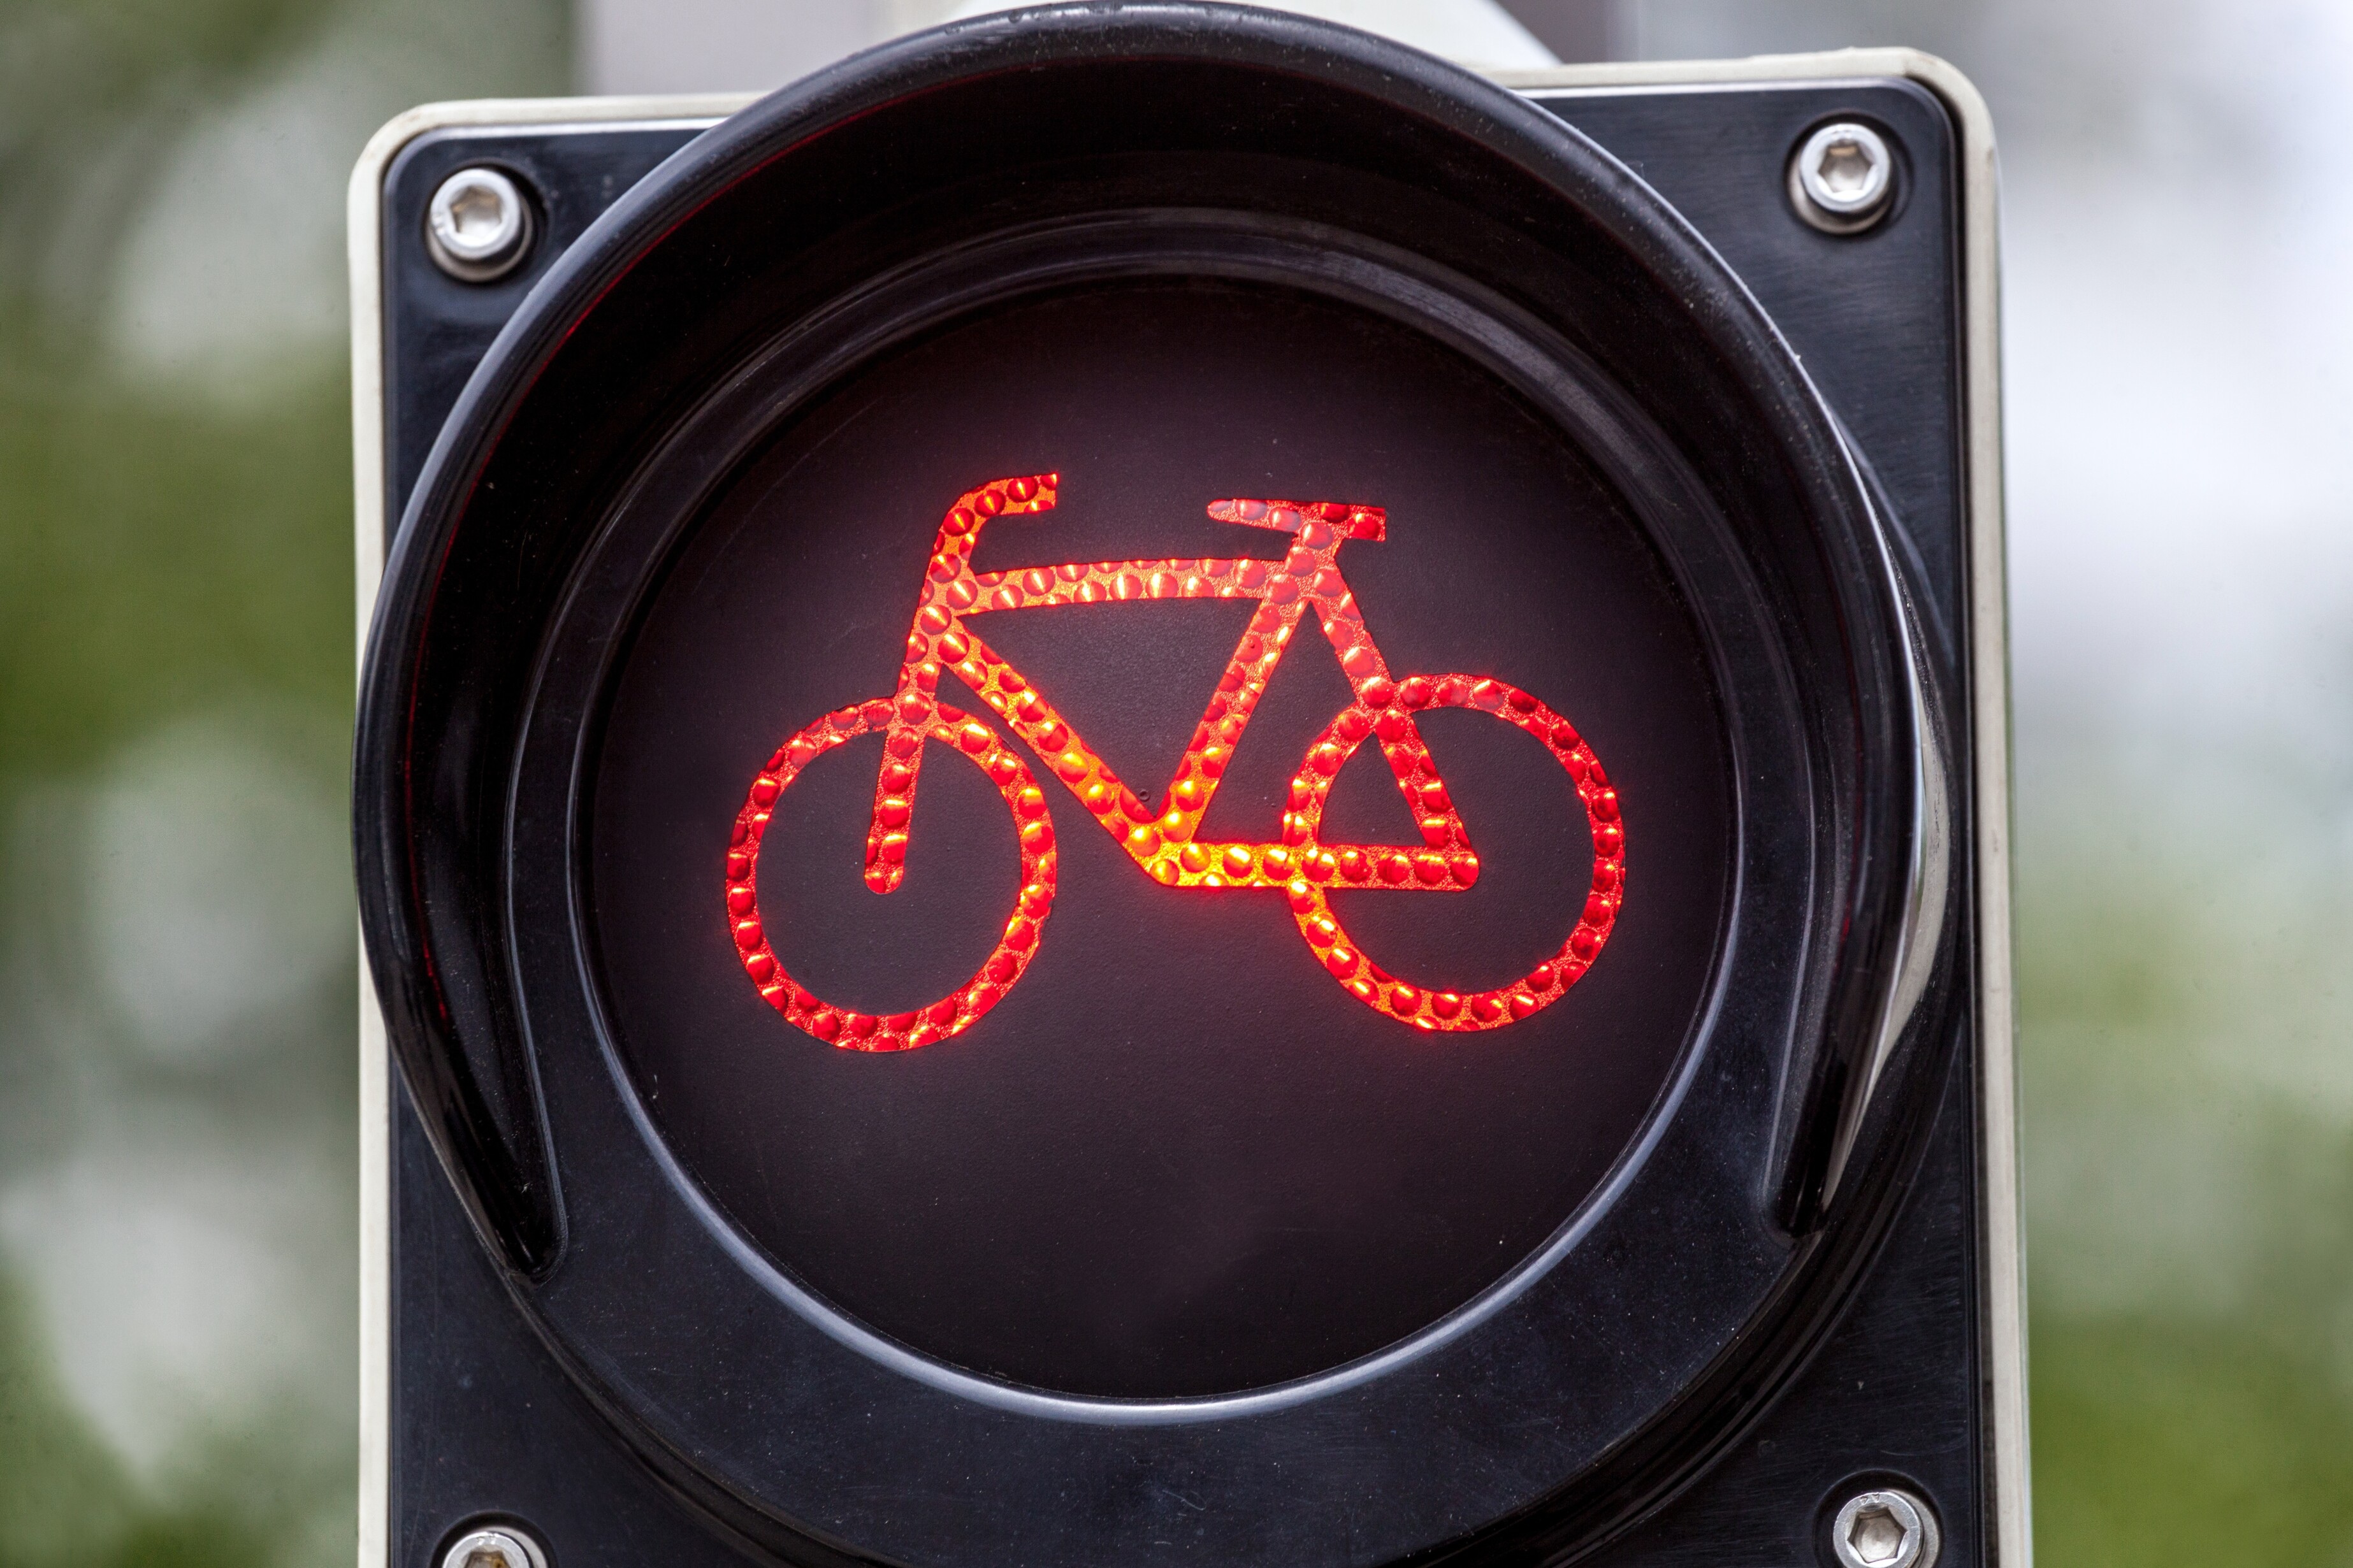 Vias survey: ‘cyclists admit more dangerous behavior’